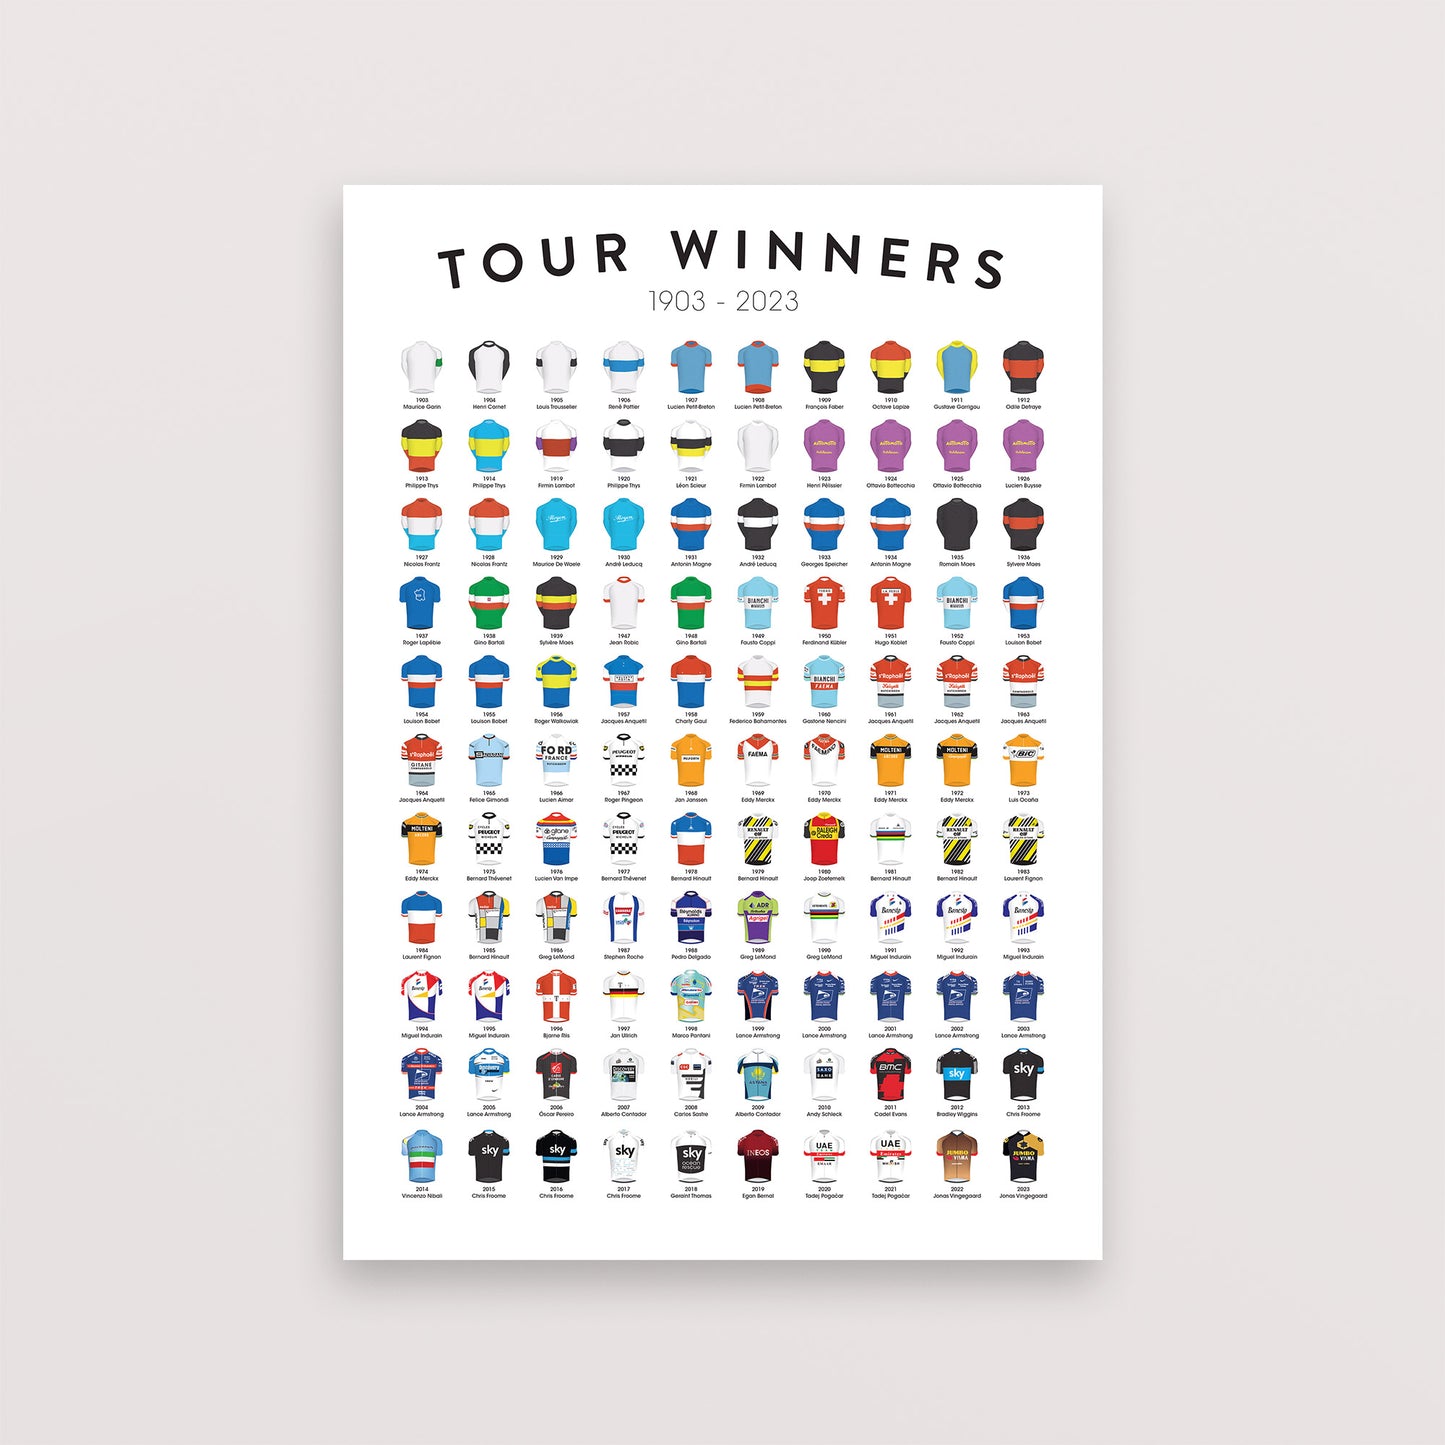 Tour-de-France-Sieger